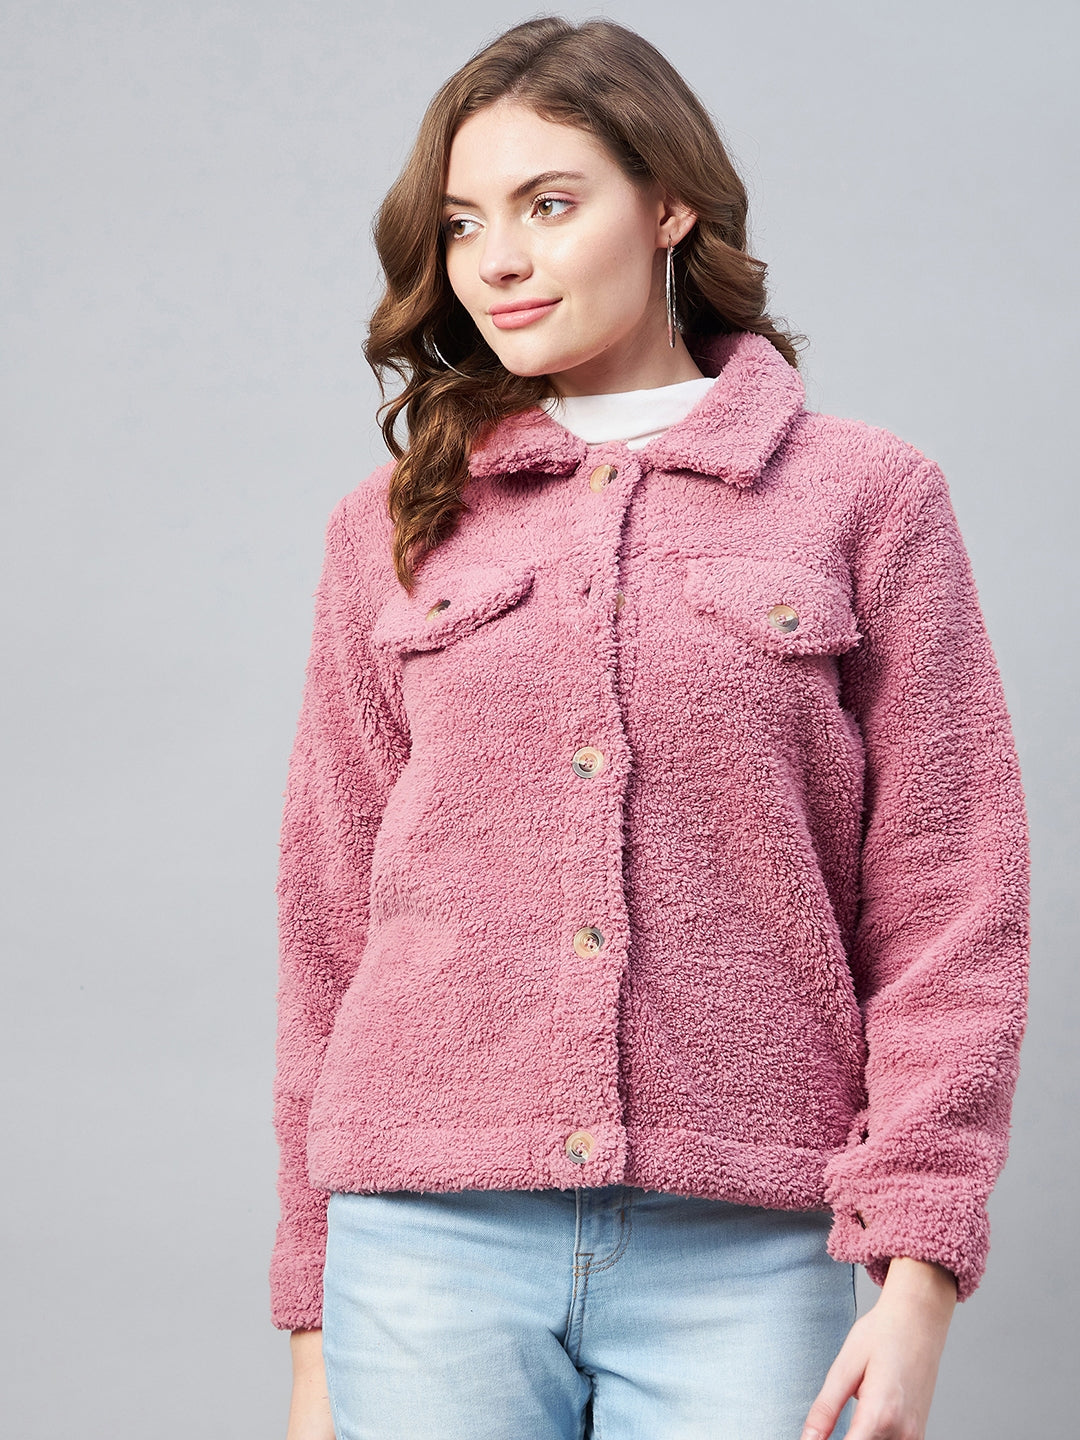 StyleStone Women's Pink Fleece Casual Winter Jacket